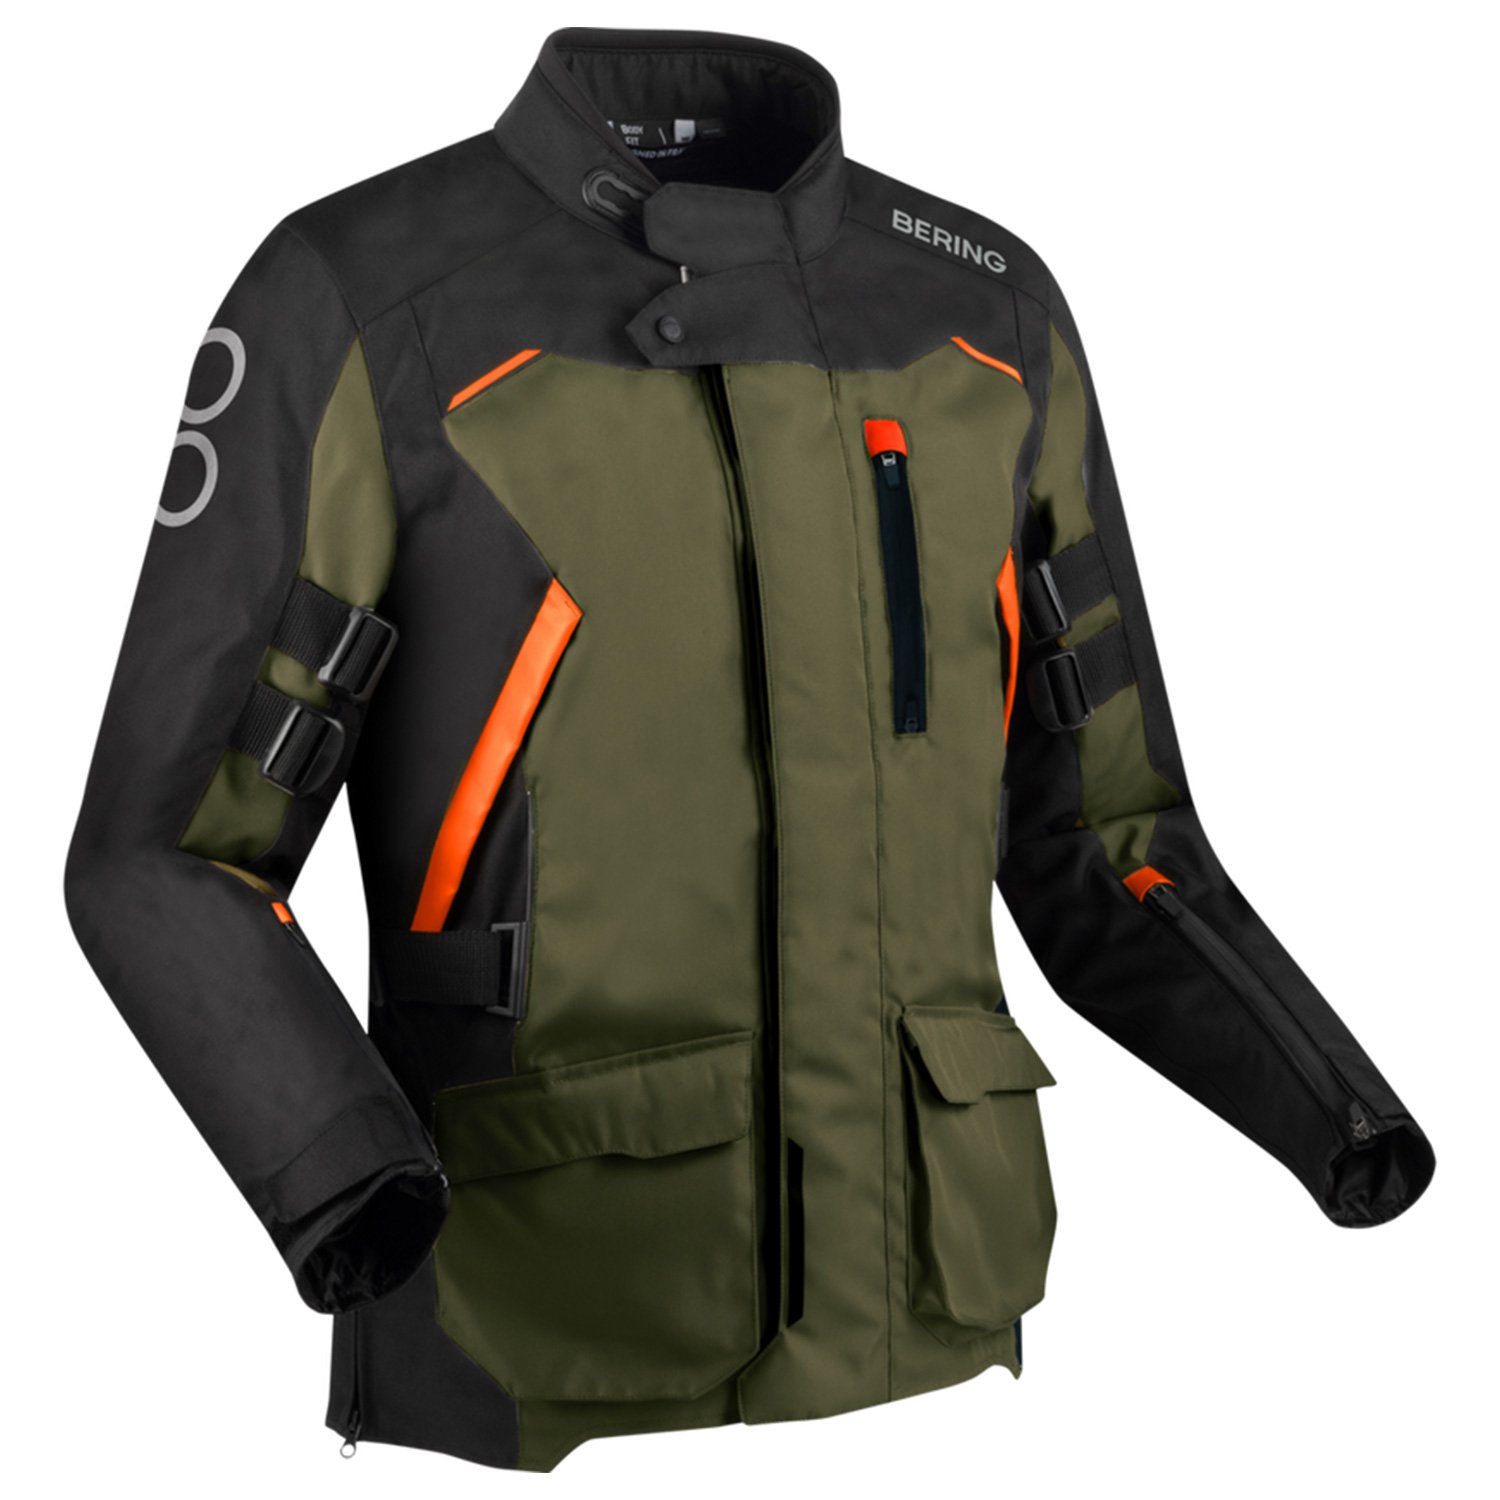 Image of Bering Zephyr Jacket Black Khaki Orange Size M ID 3660815181010